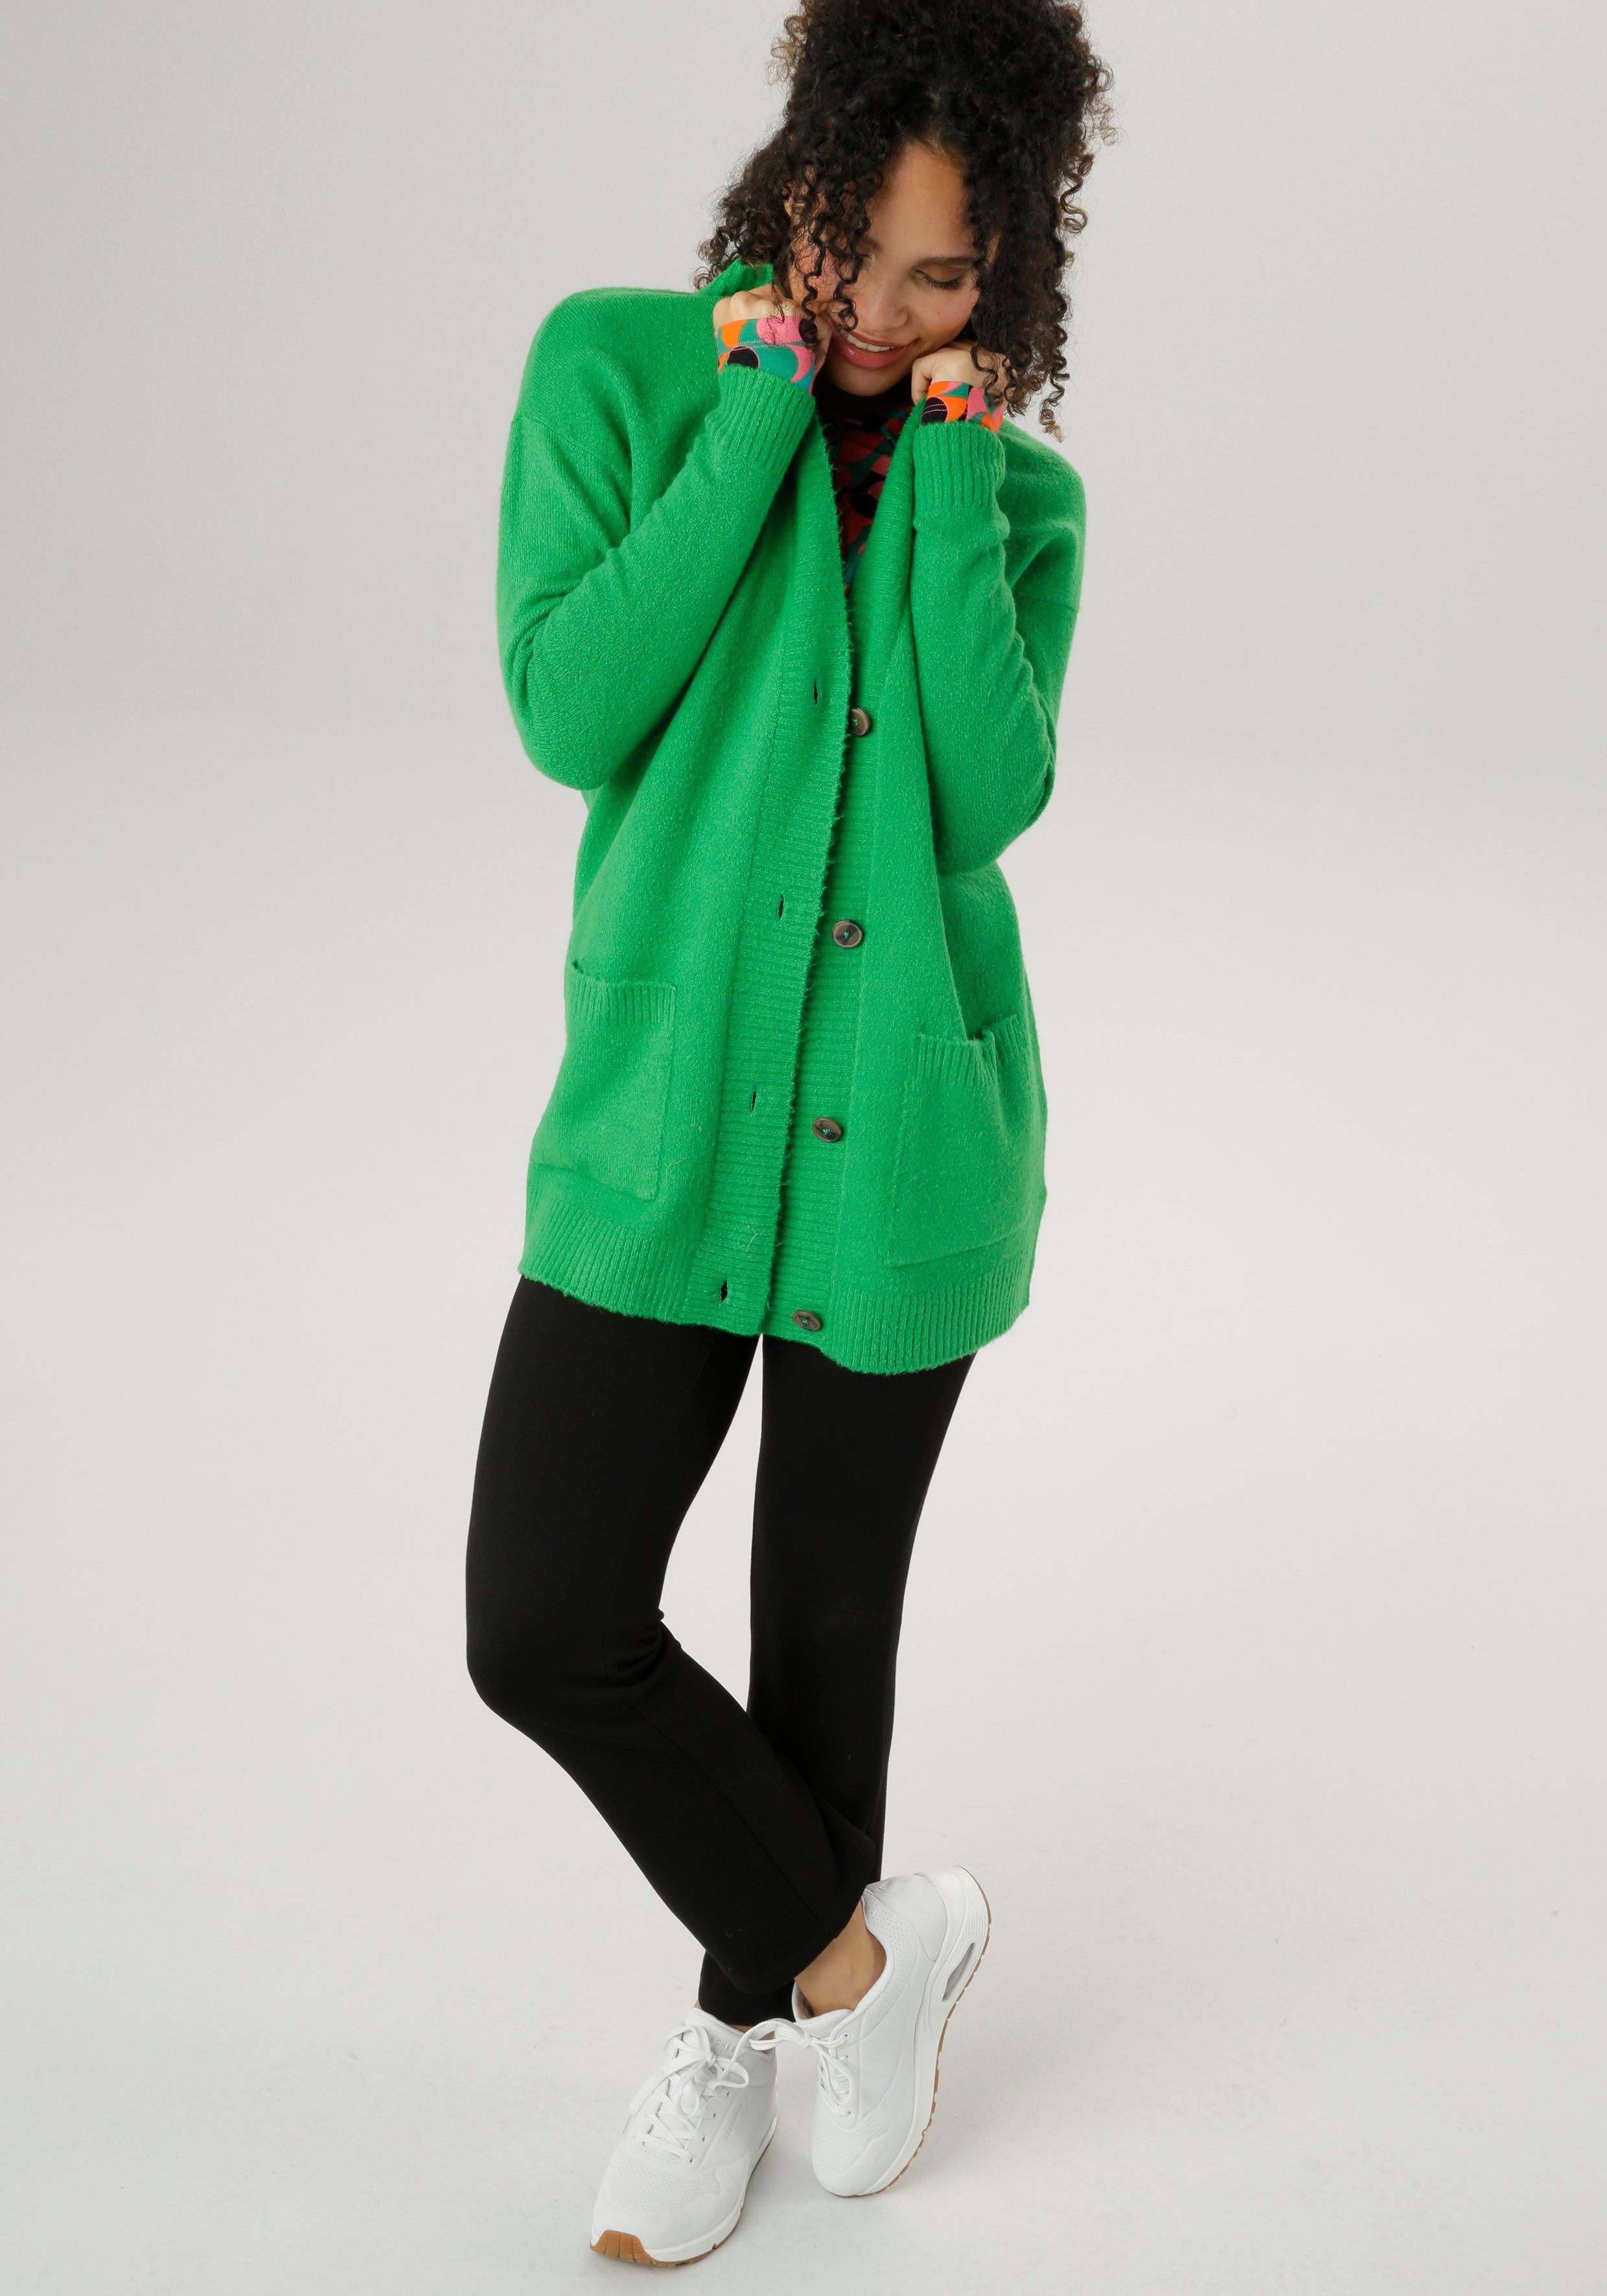 Aniston SELECTED Longstrickjacke mit aufgesetzen grün Taschen